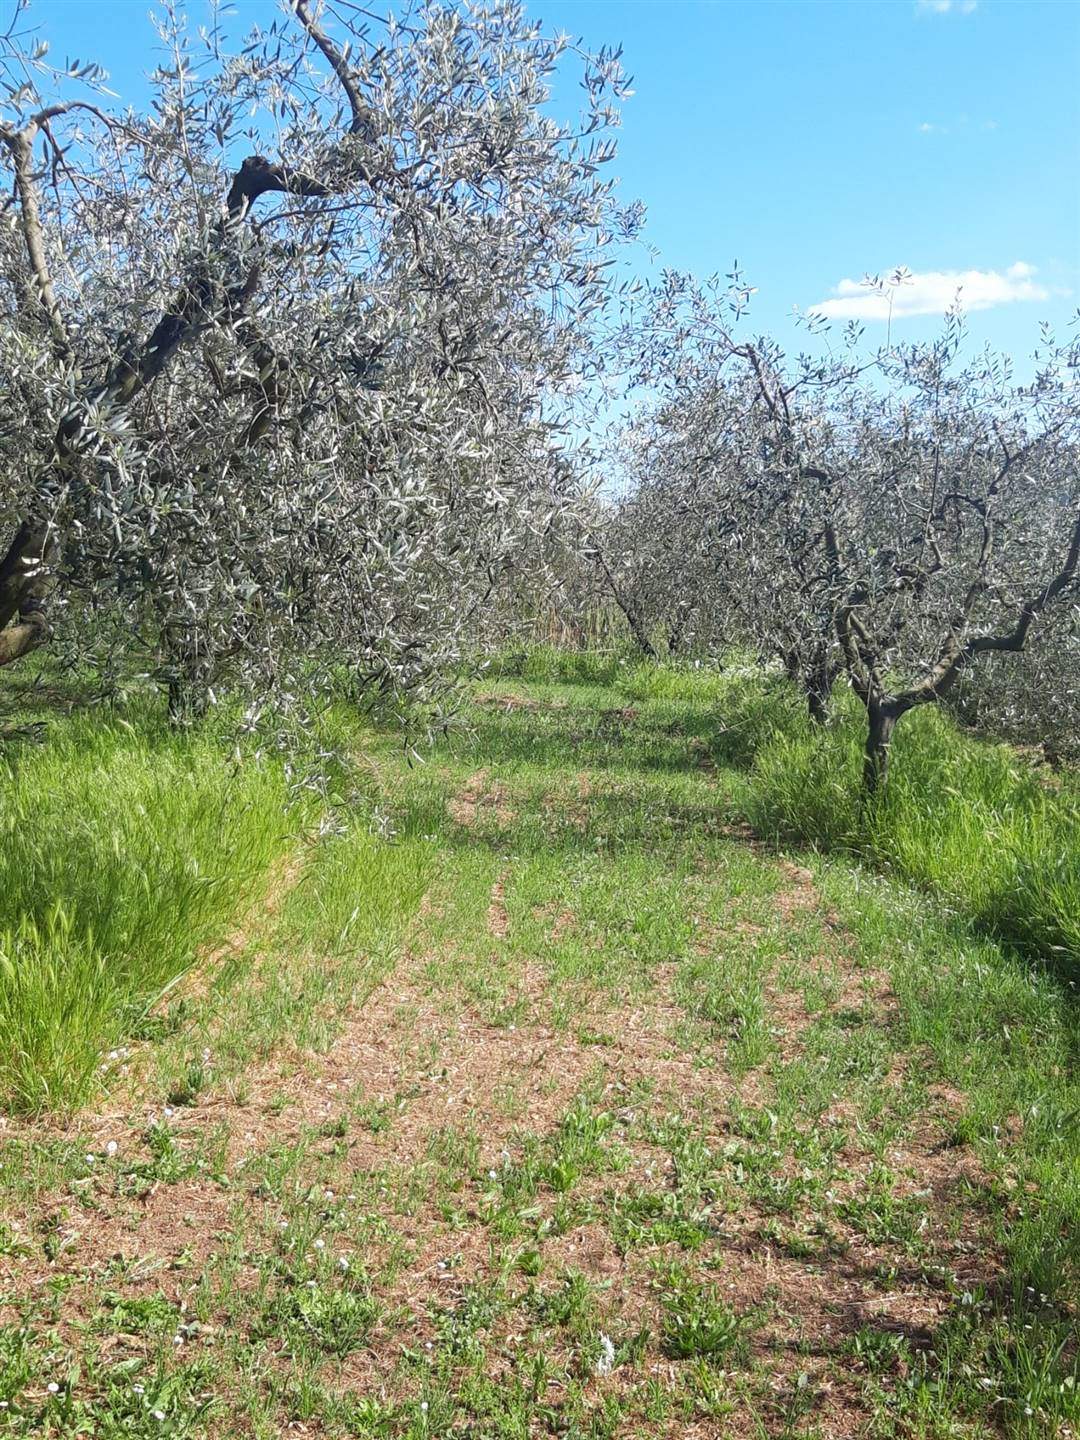 Terreno Agricolo in vendita a Quarrata, 9999 locali, zona Zona: Tizzana, prezzo € 55.000 | CambioCasa.it